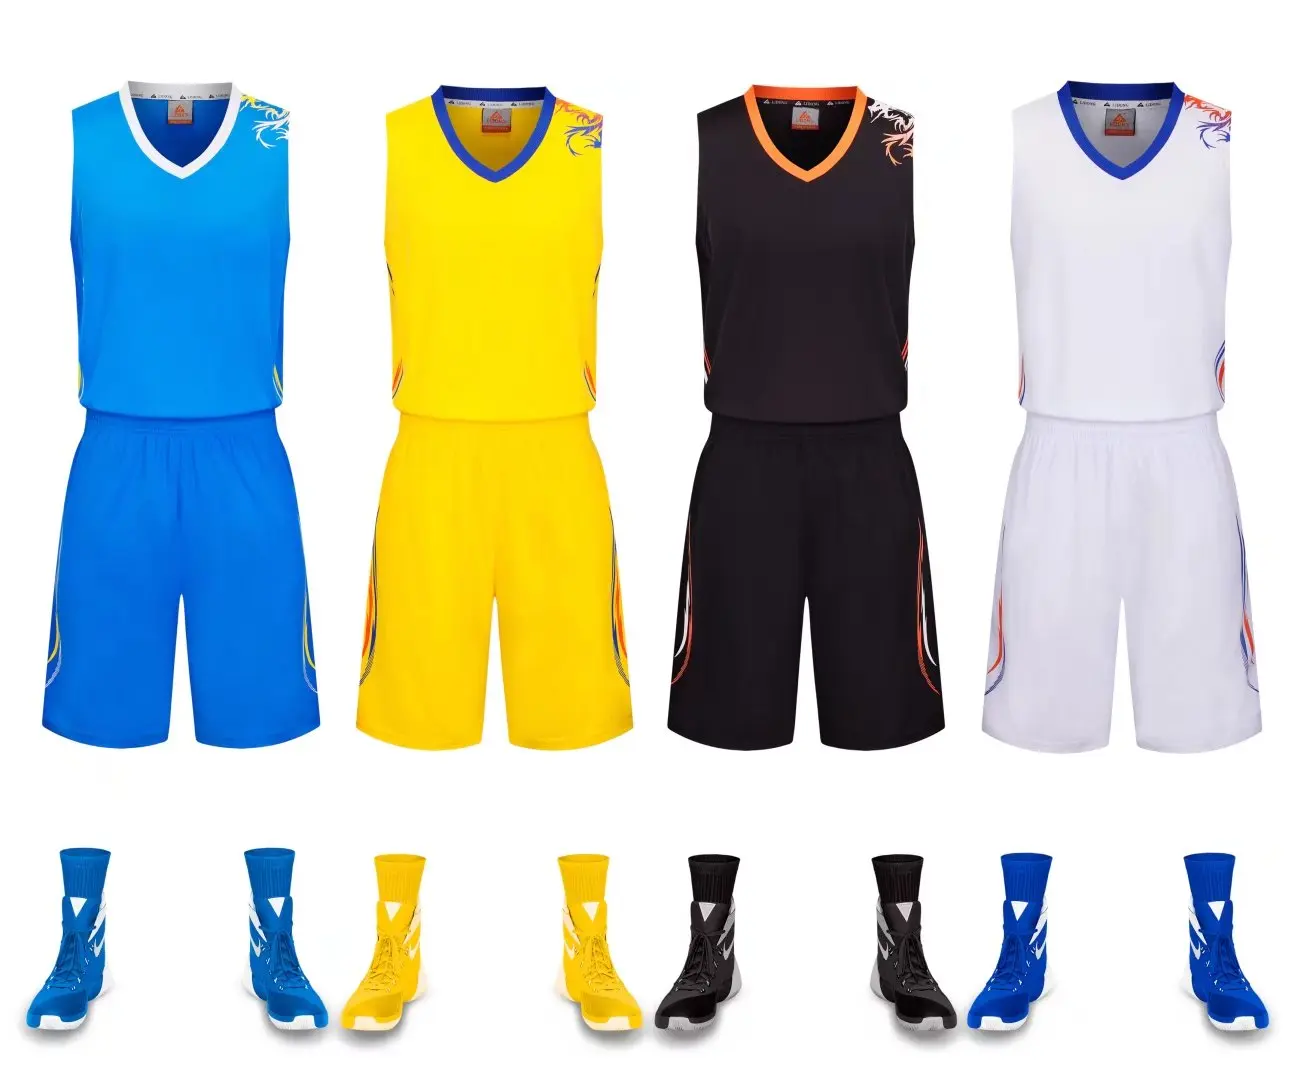 LiDong новые баскетбольные майки спортивная форма без рукавов рубашки и шорты команды тренировочные комплекты, самостоятельная настройка доступны 015